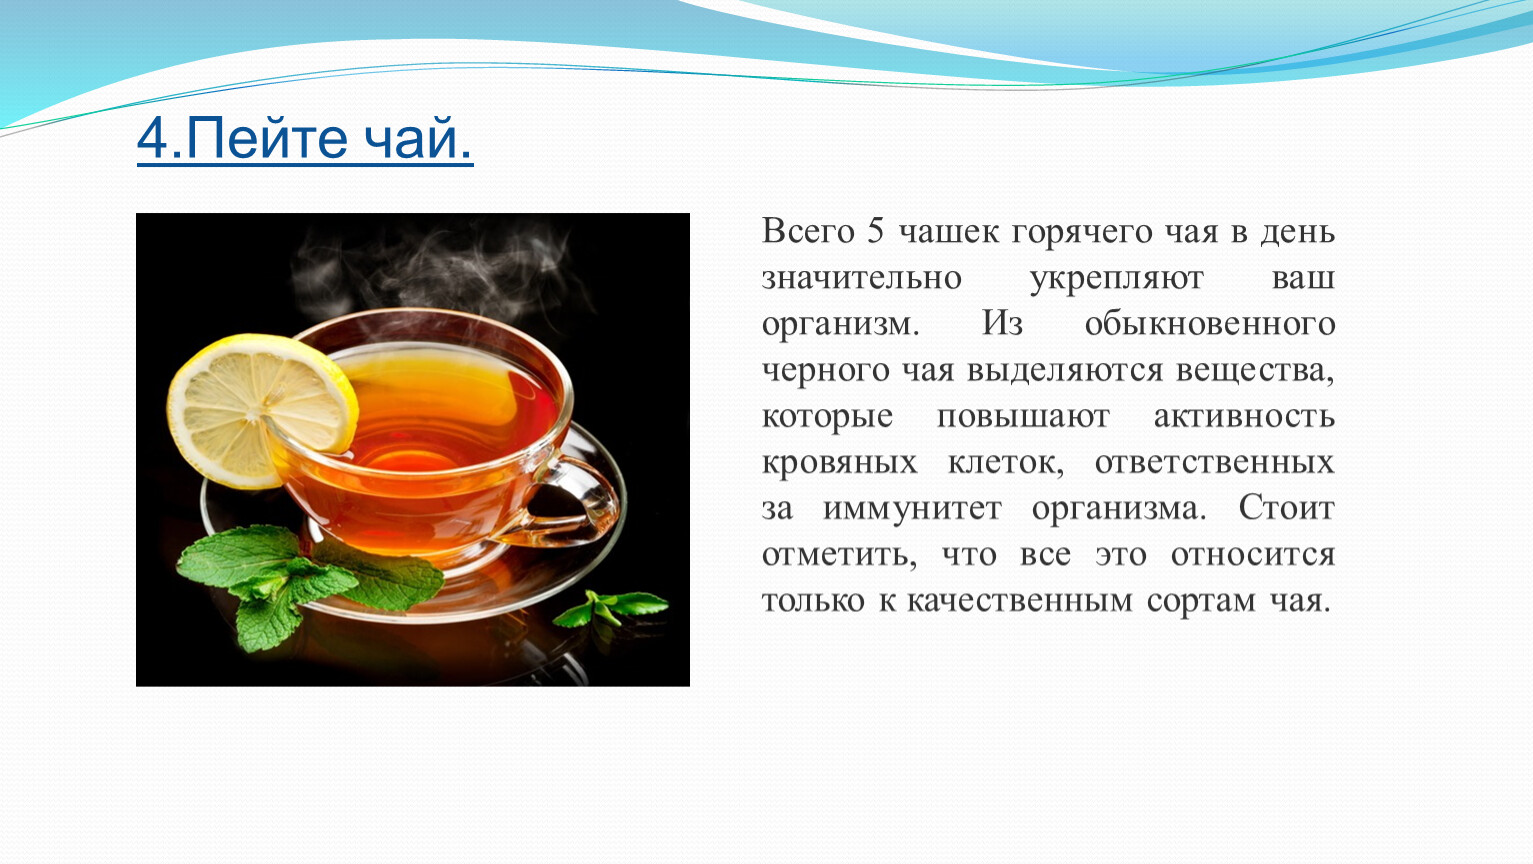 При температуре пьют горячий чай. Чай картинки для презентации. Температура кружки с горячим чаем. С чем можно сравнить горячий чай. Горячий чай Оби.